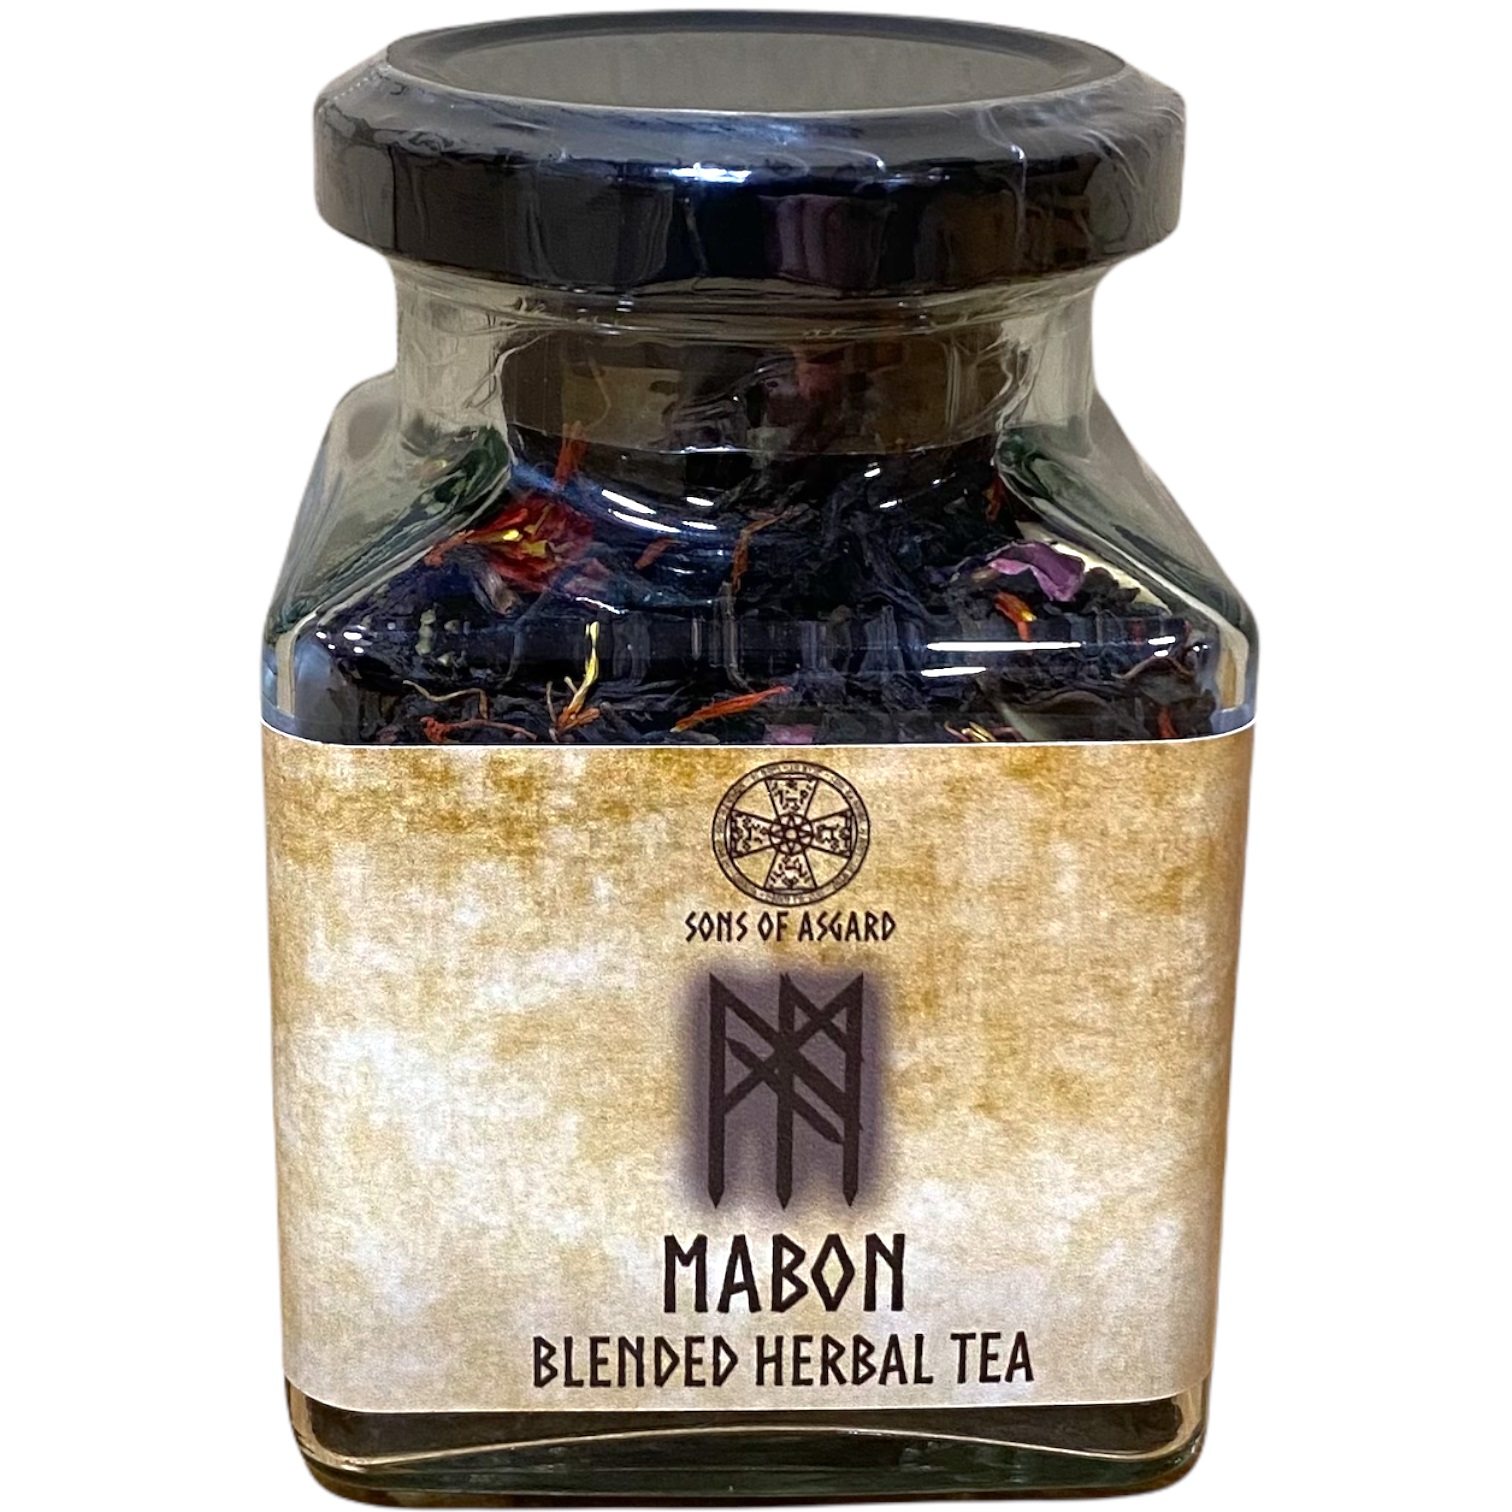 Mabon - Blended Herbal Tea